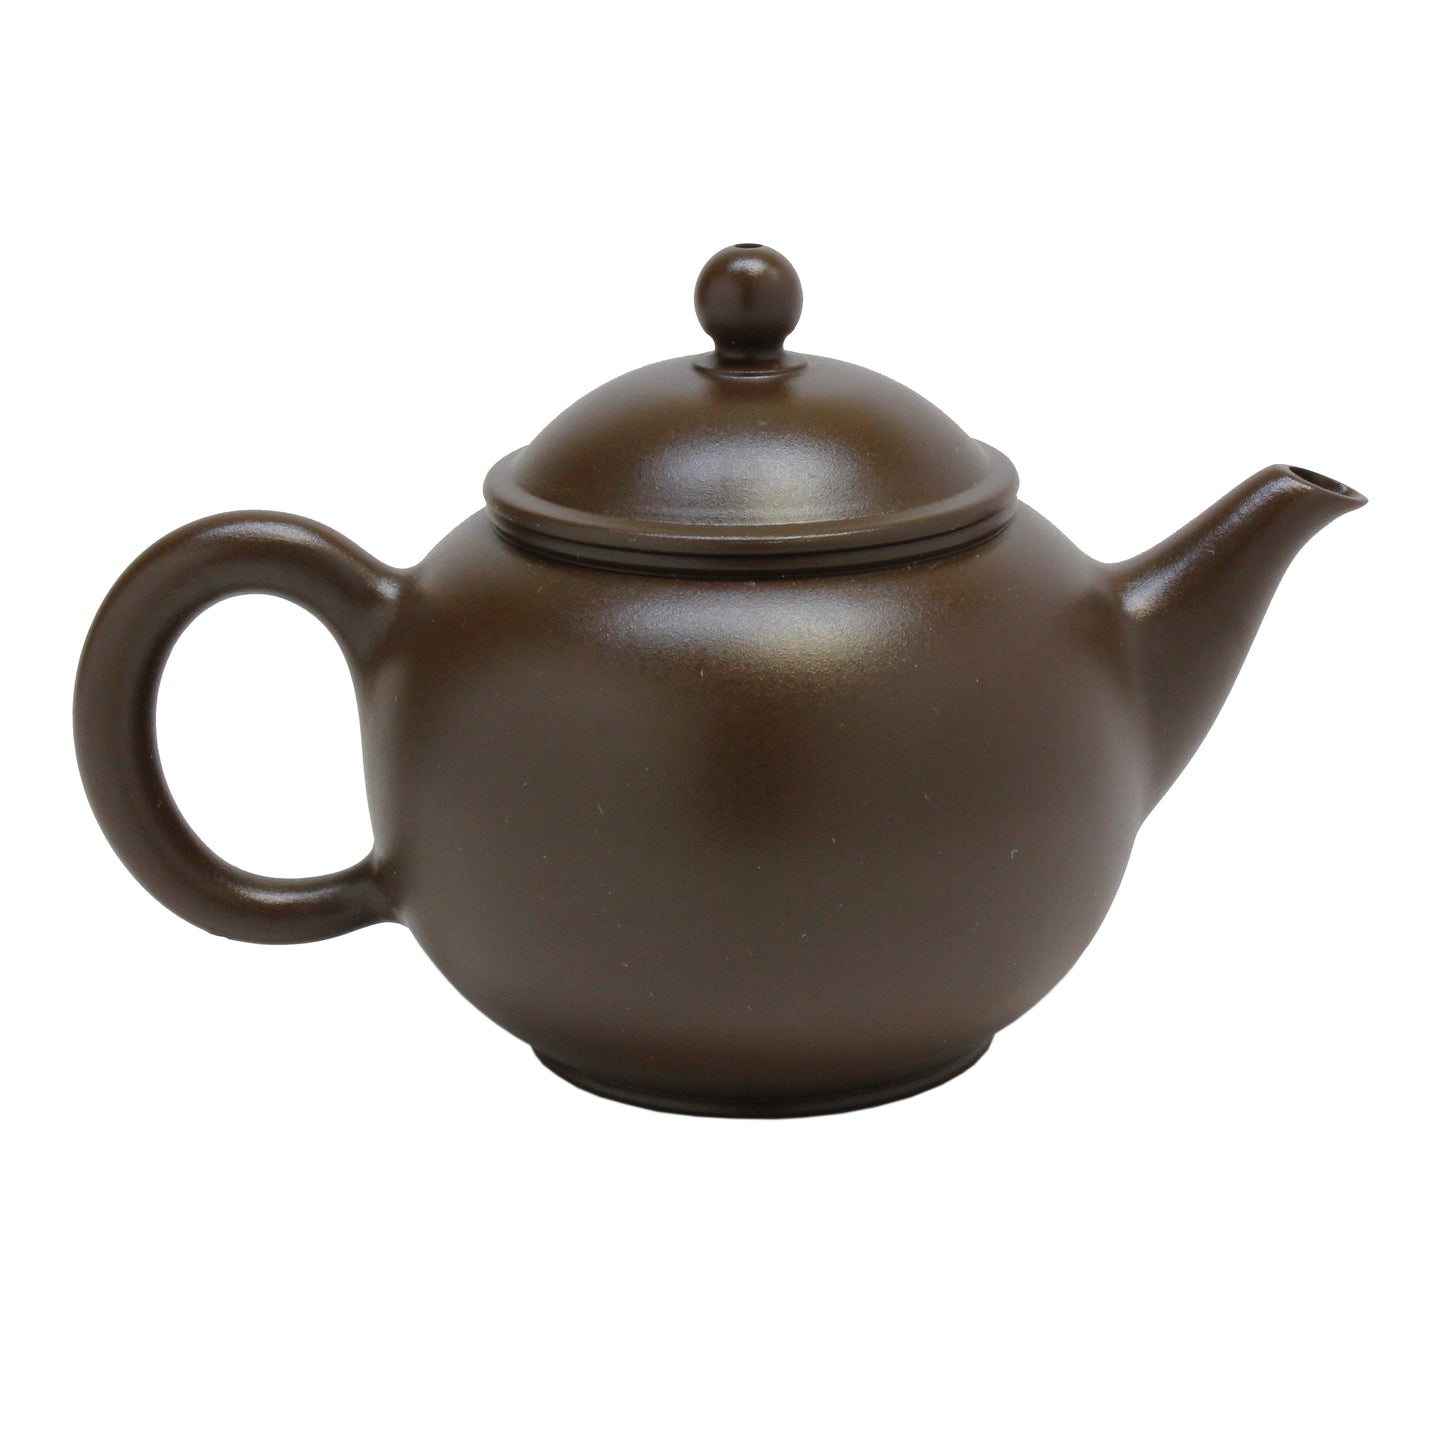 Hand-Thrown Purple Clay Teapot - 2.5 oz